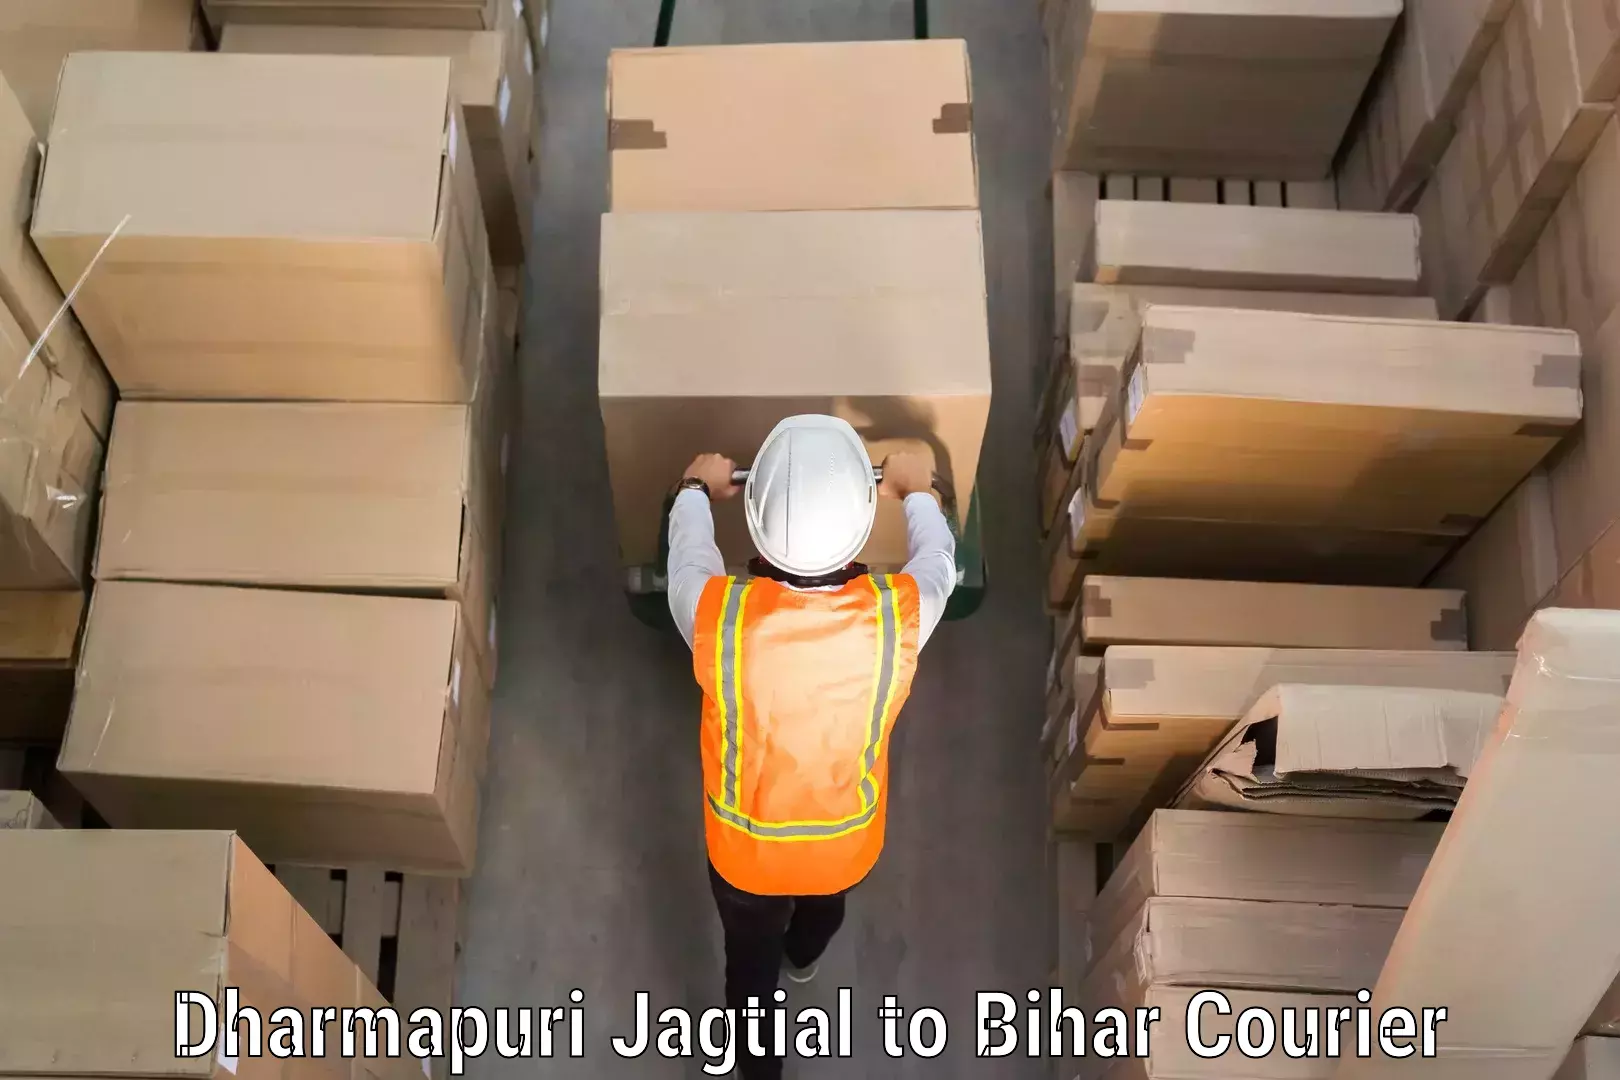 Airport luggage delivery Dharmapuri Jagtial to Motihari